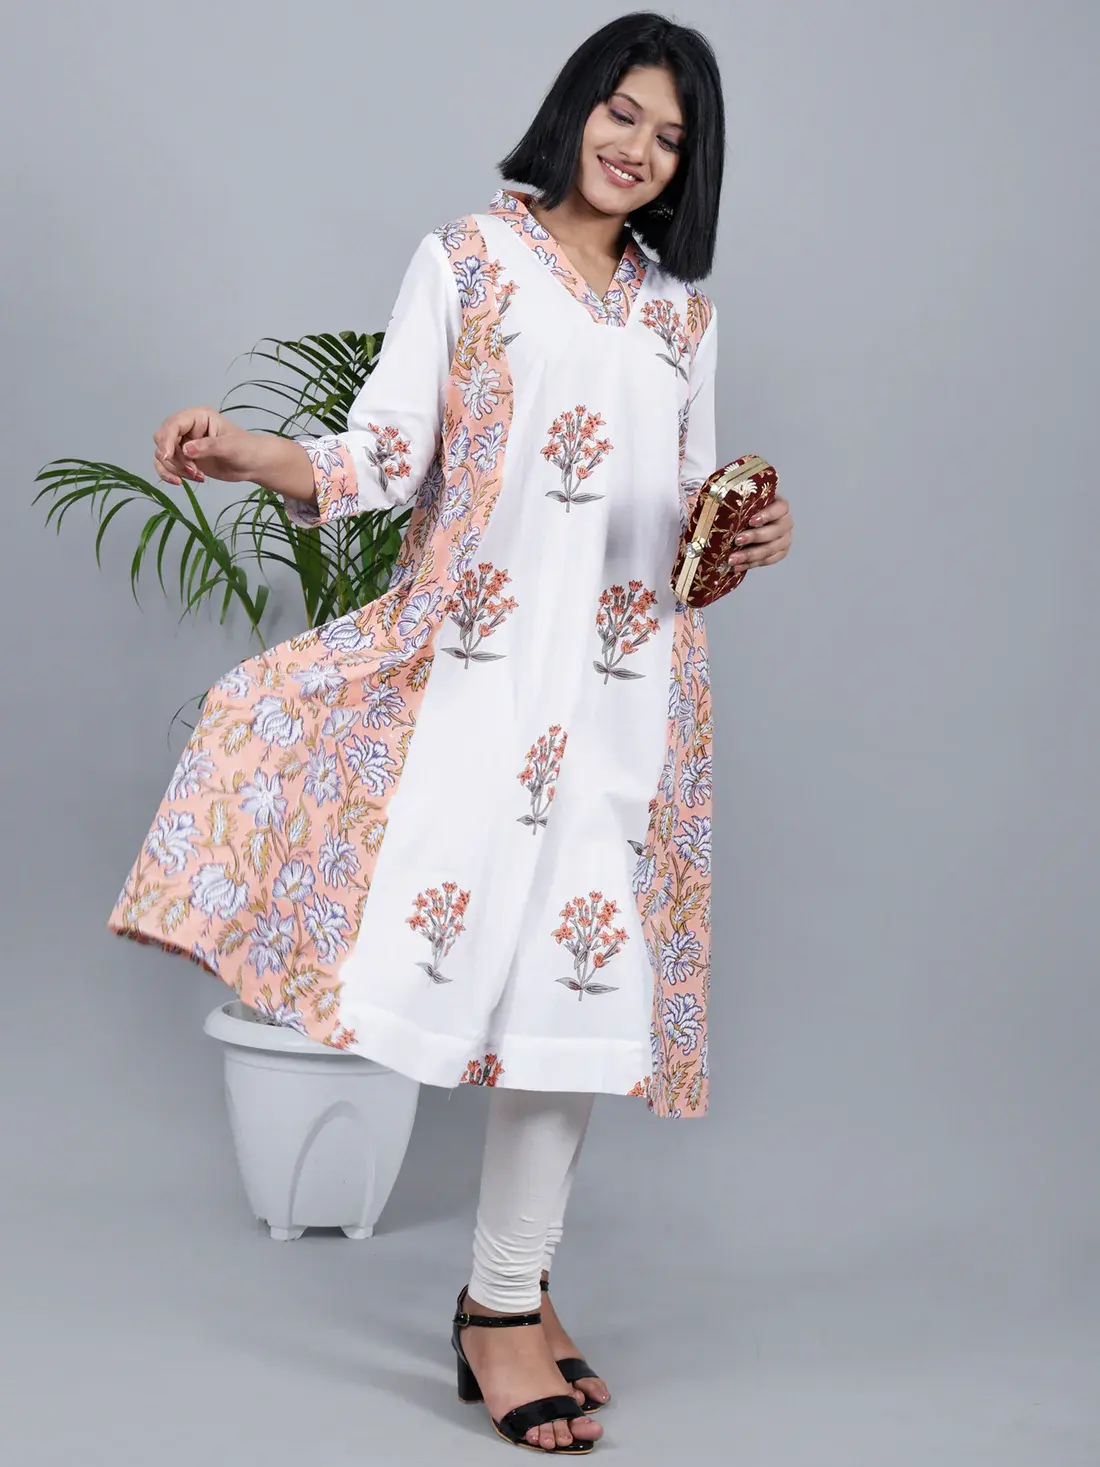 סיטונאי עיצוב אחרון חדש אופנתי הודי פקיסטני אתני בגדי קיץ לבן וורוד בלוק מודפס קו A קורטה במחיר נמוך